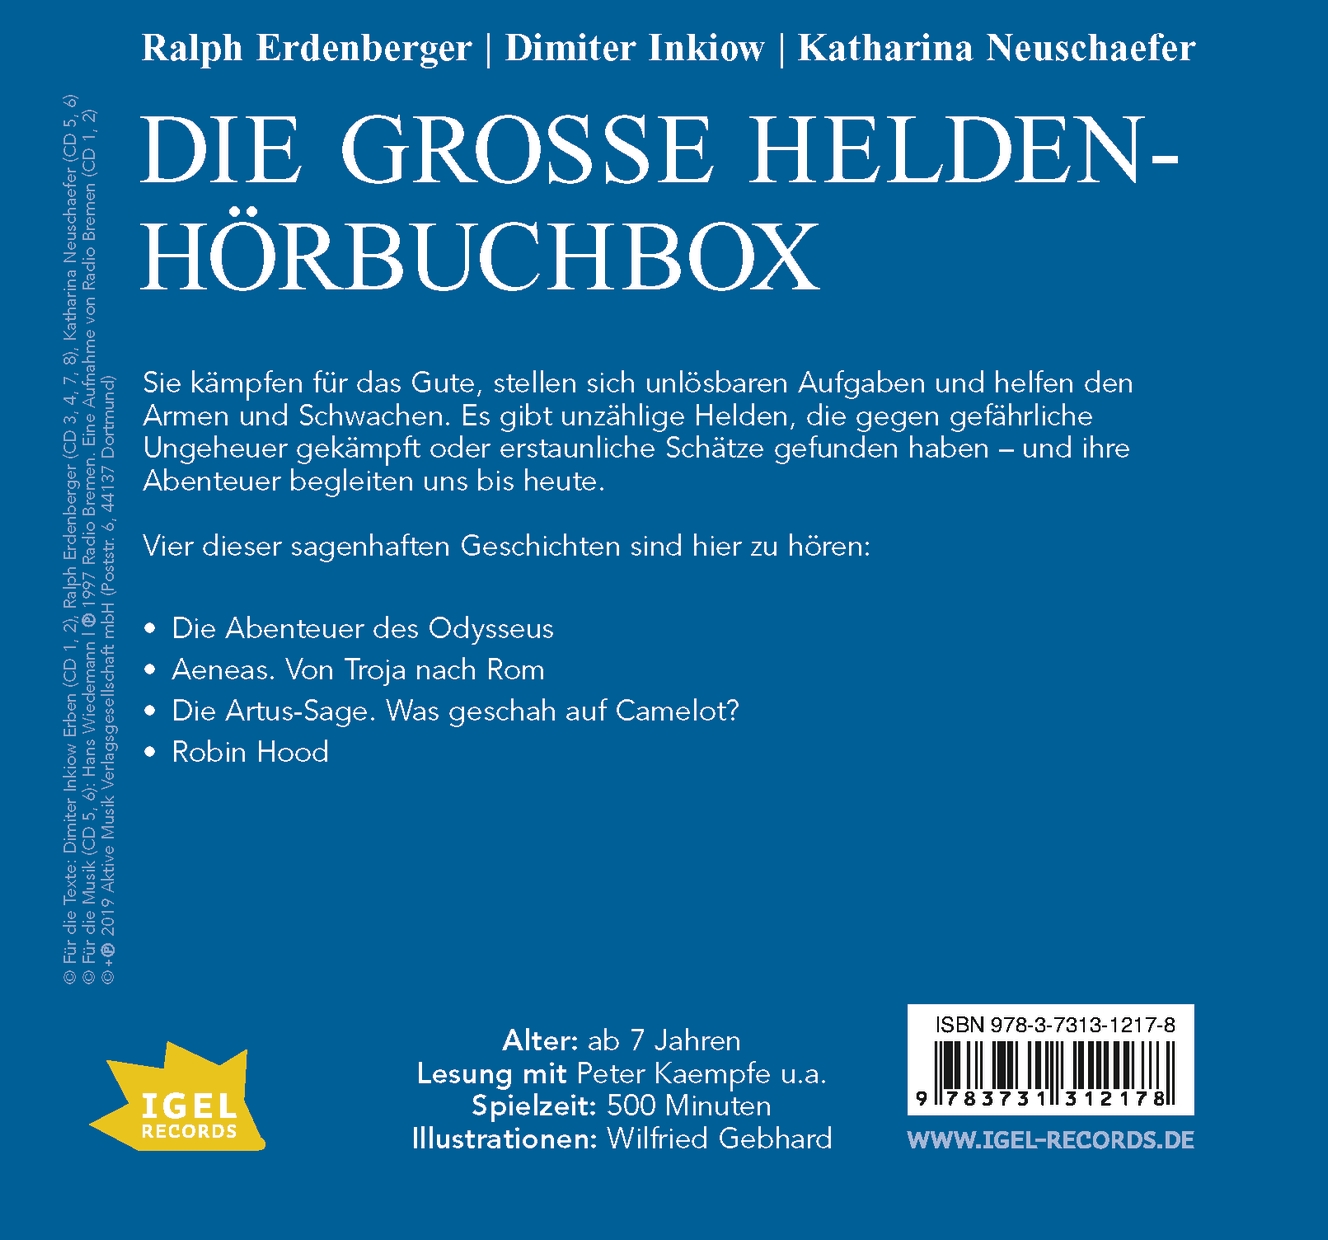 Die große Helden-Hörbuchbox (Audio-CD)